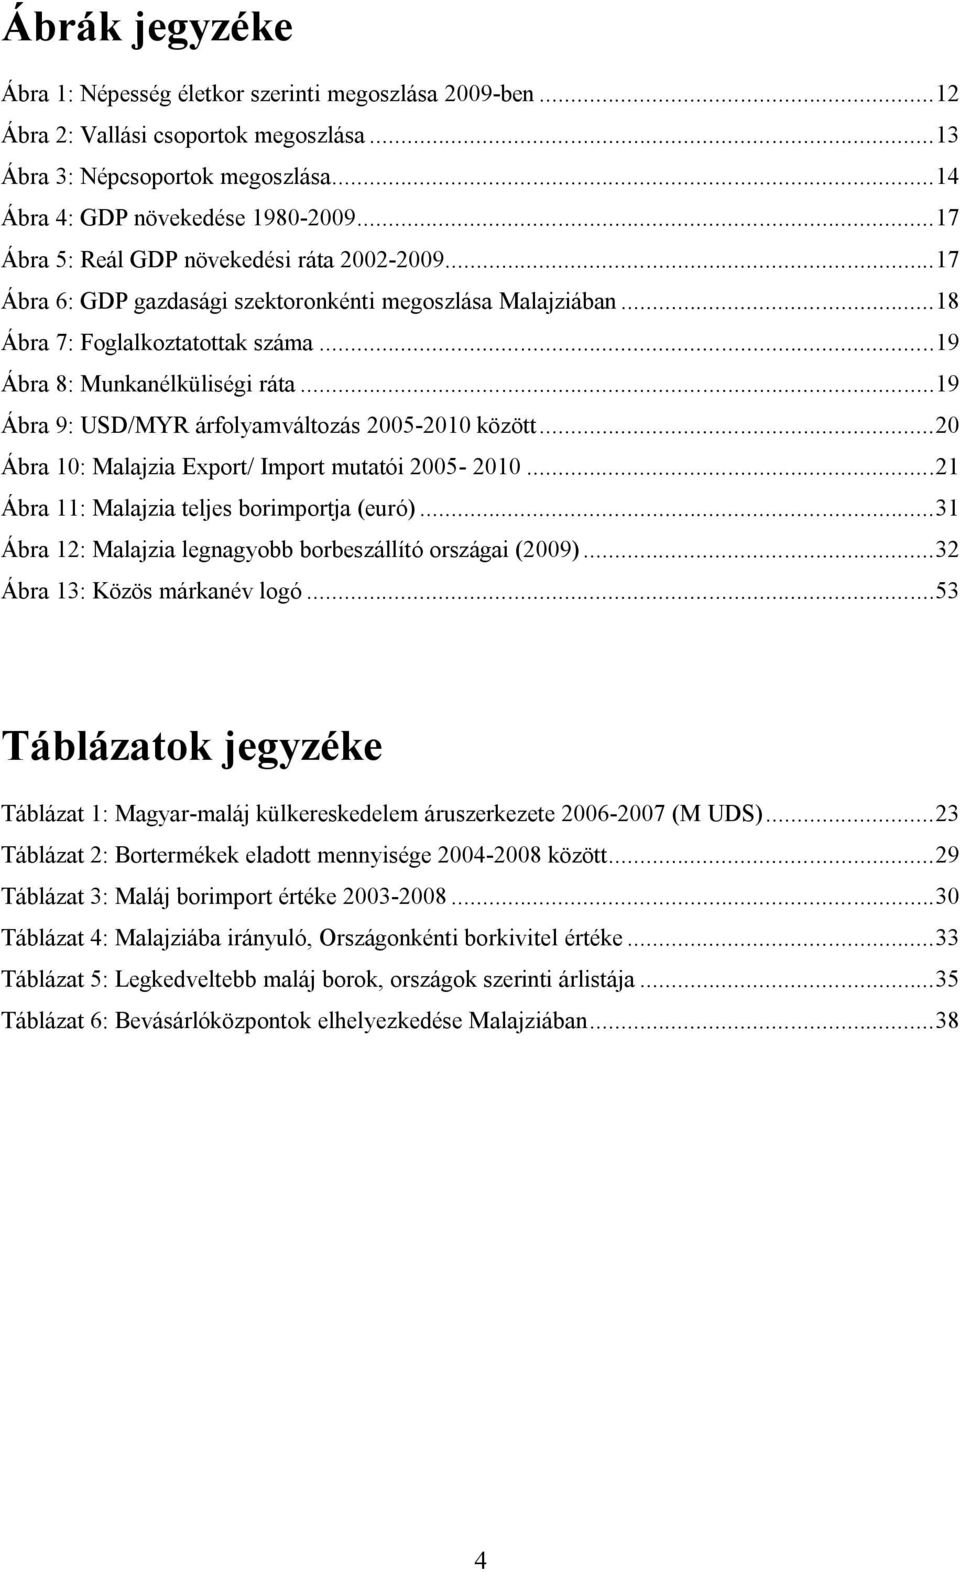 .. 19 Ábra 9: USD/MYR árfolyamváltozás 2005-2010 között... 20 Ábra 10: Malajzia Export/ Import mutatói 2005-2010... 21 Ábra 11: Malajzia teljes borimportja (euró).